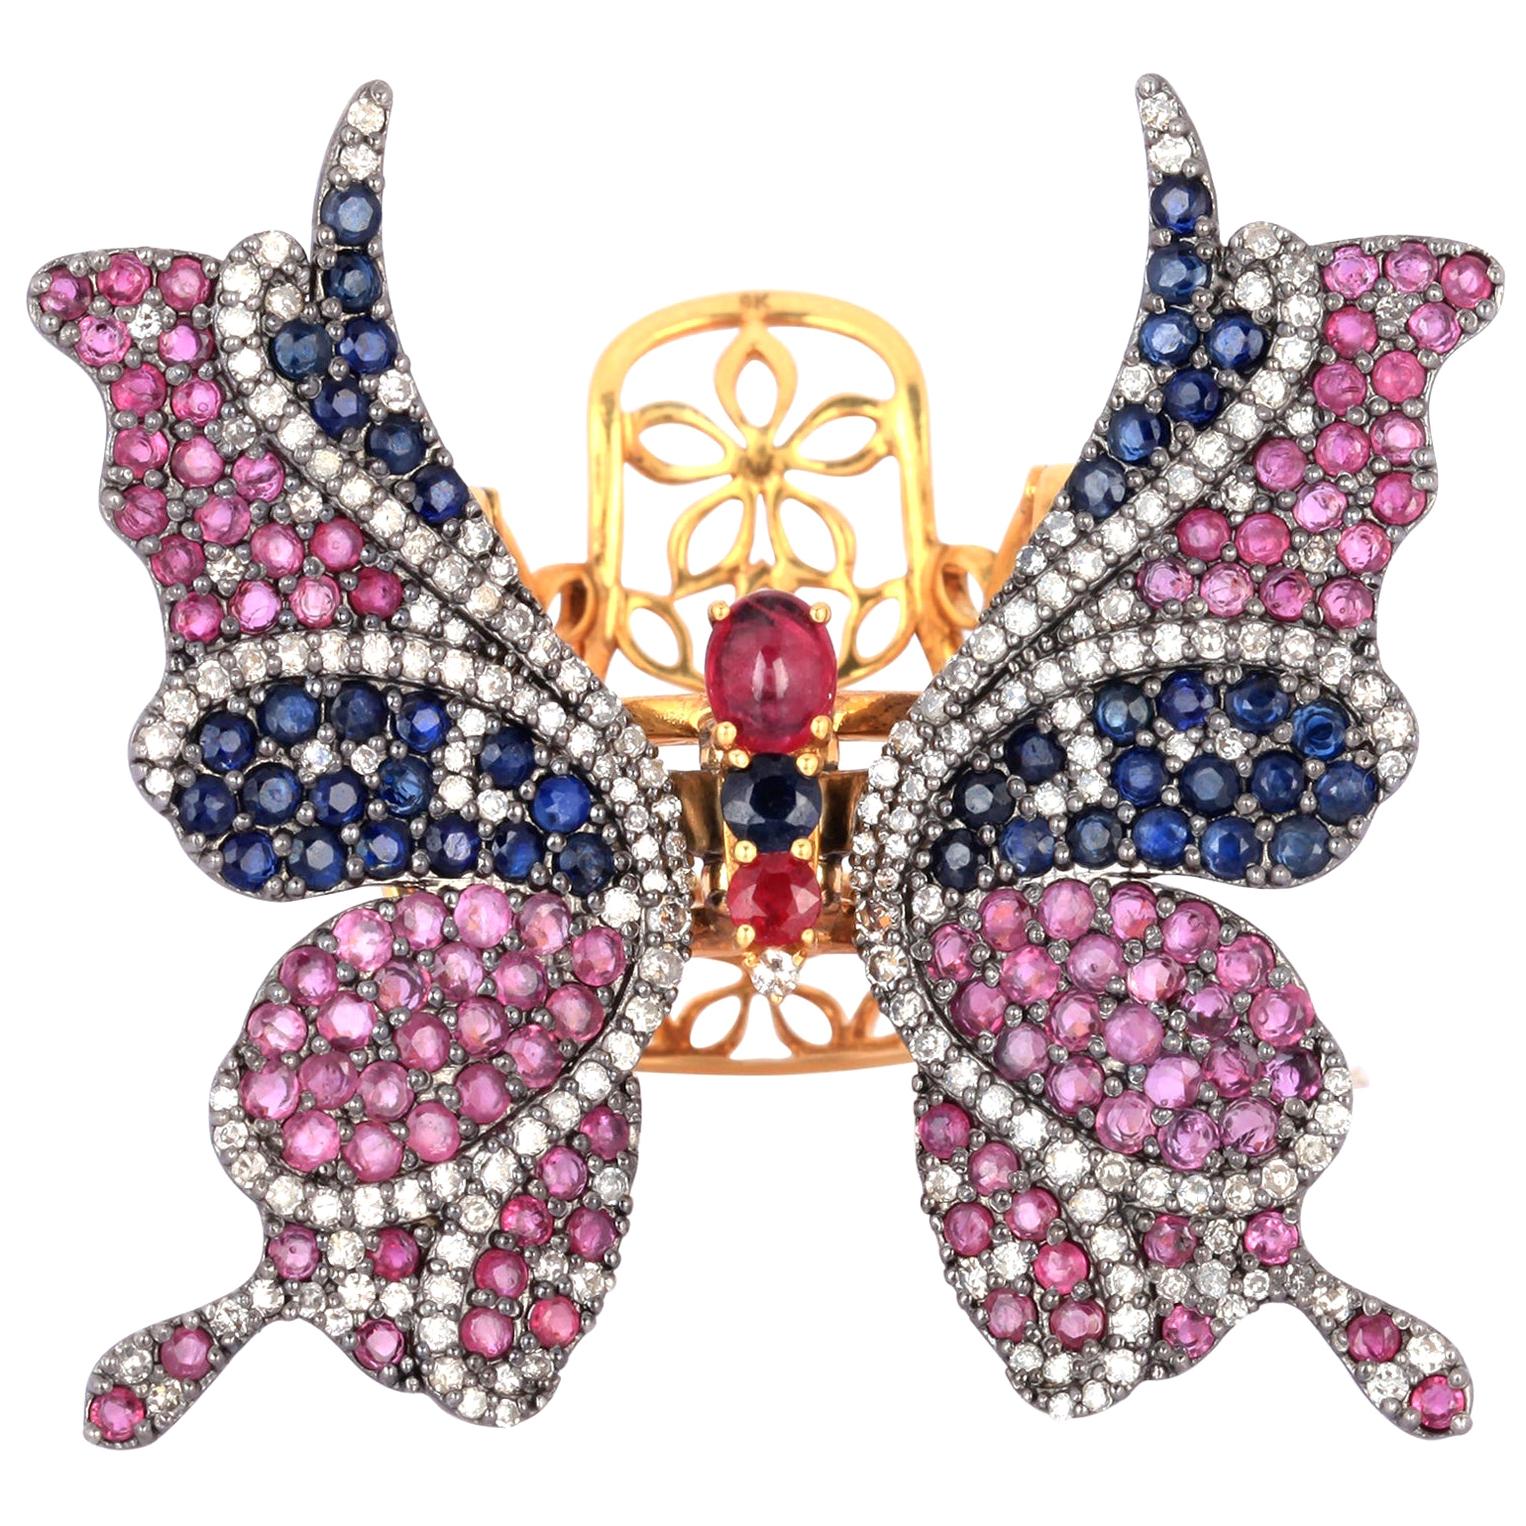 En vente :  Bague papillon en rubis, saphirs bleus et diamants